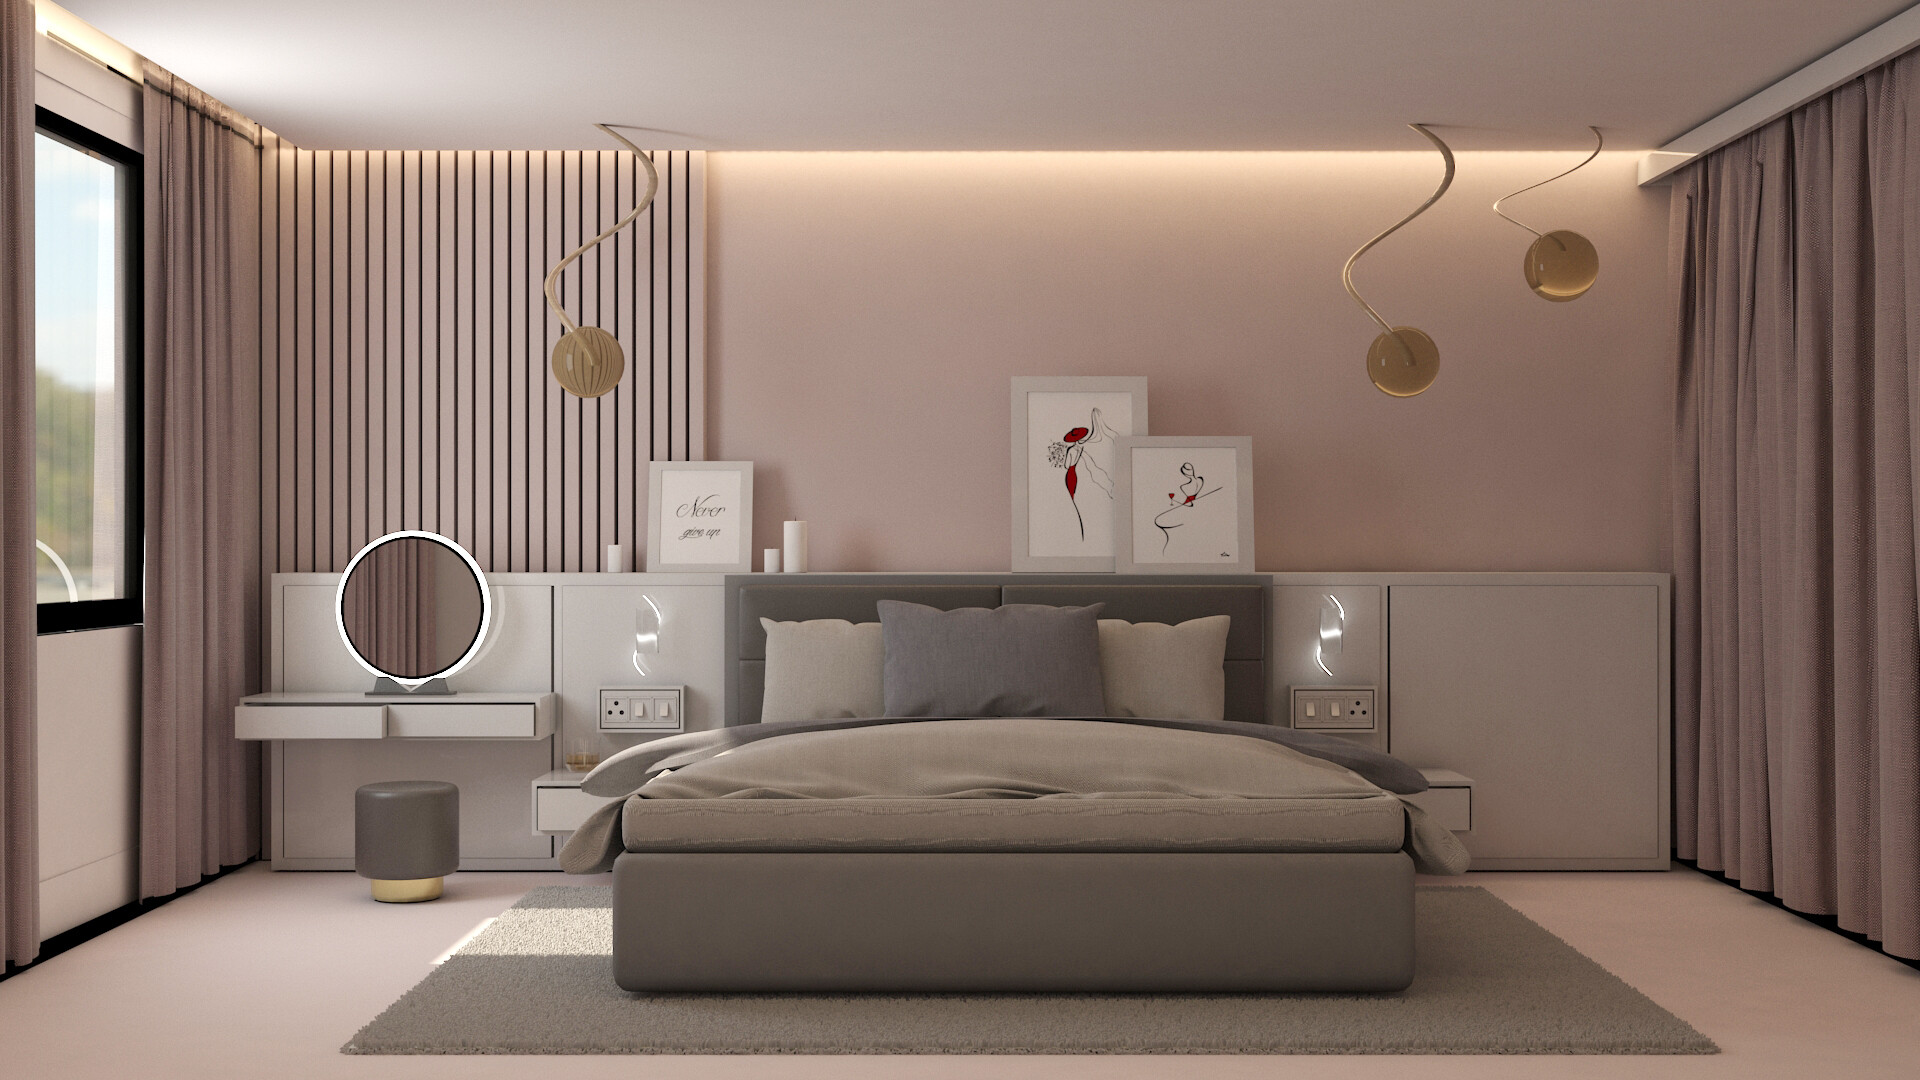 ArtStation - Interior bedroom design